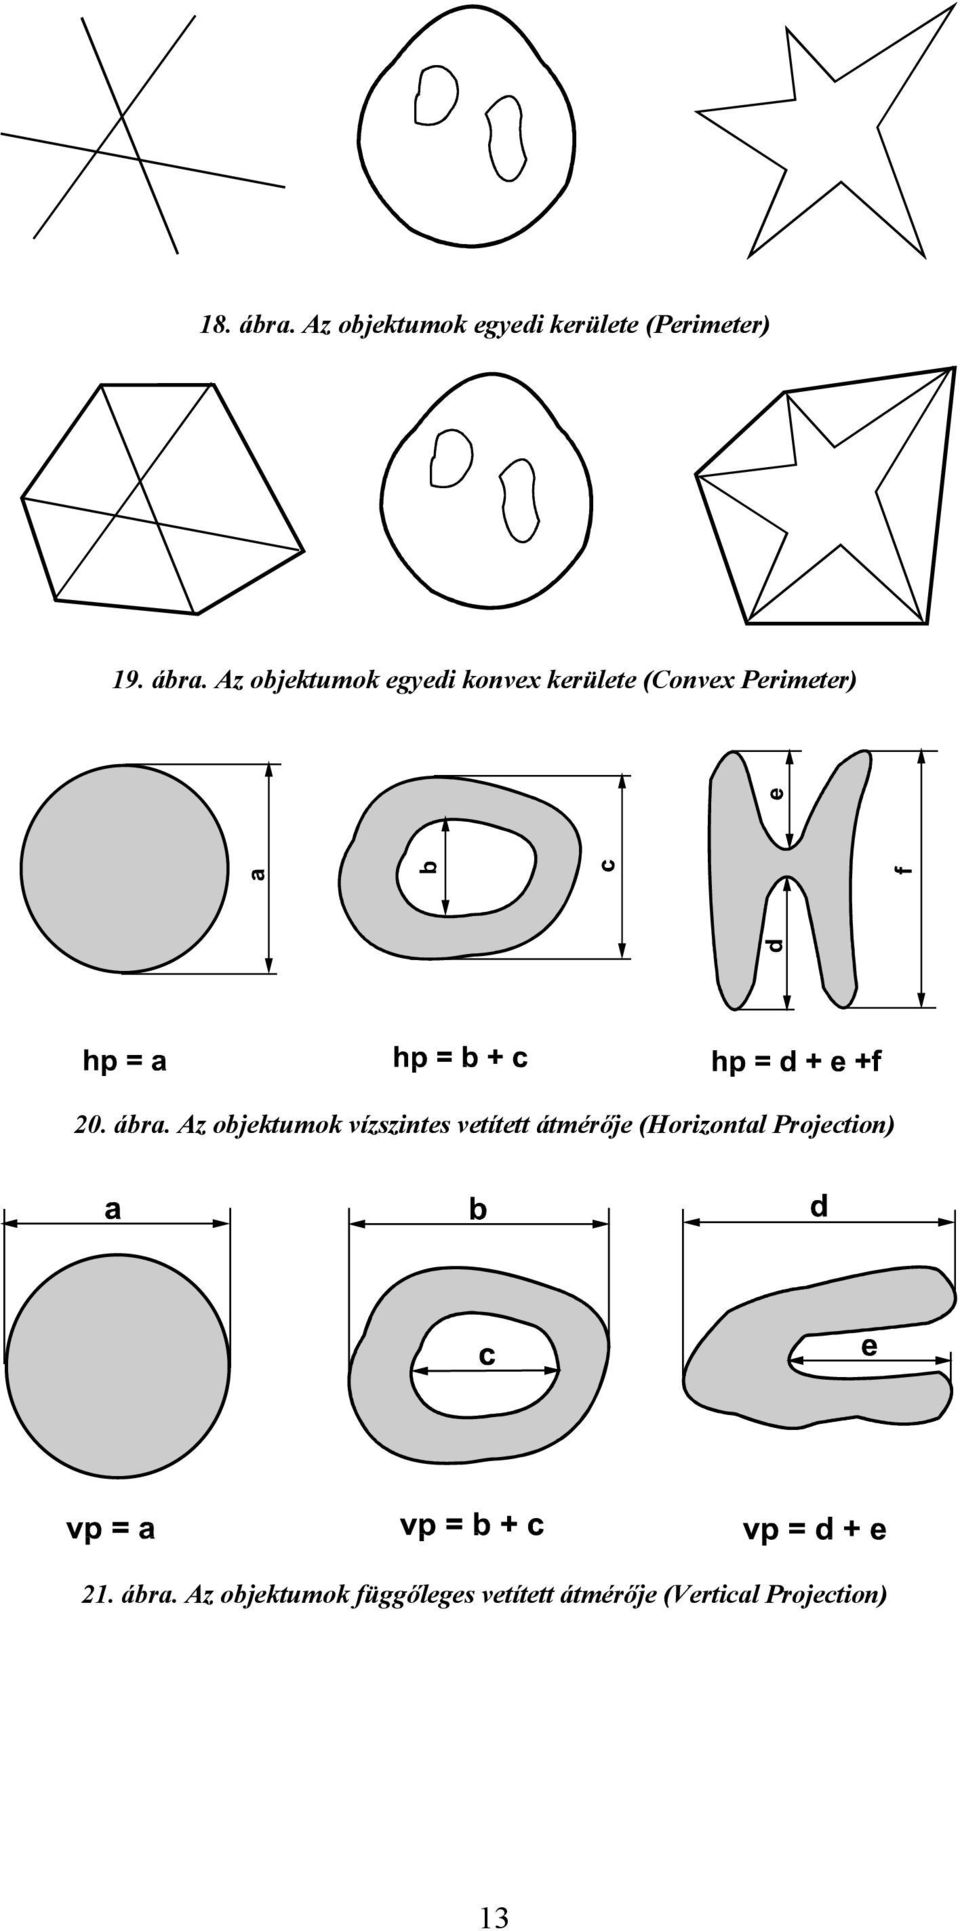 Az objektumok egyedi konvex kerülete (Convex Perimeter) 20. ábra.